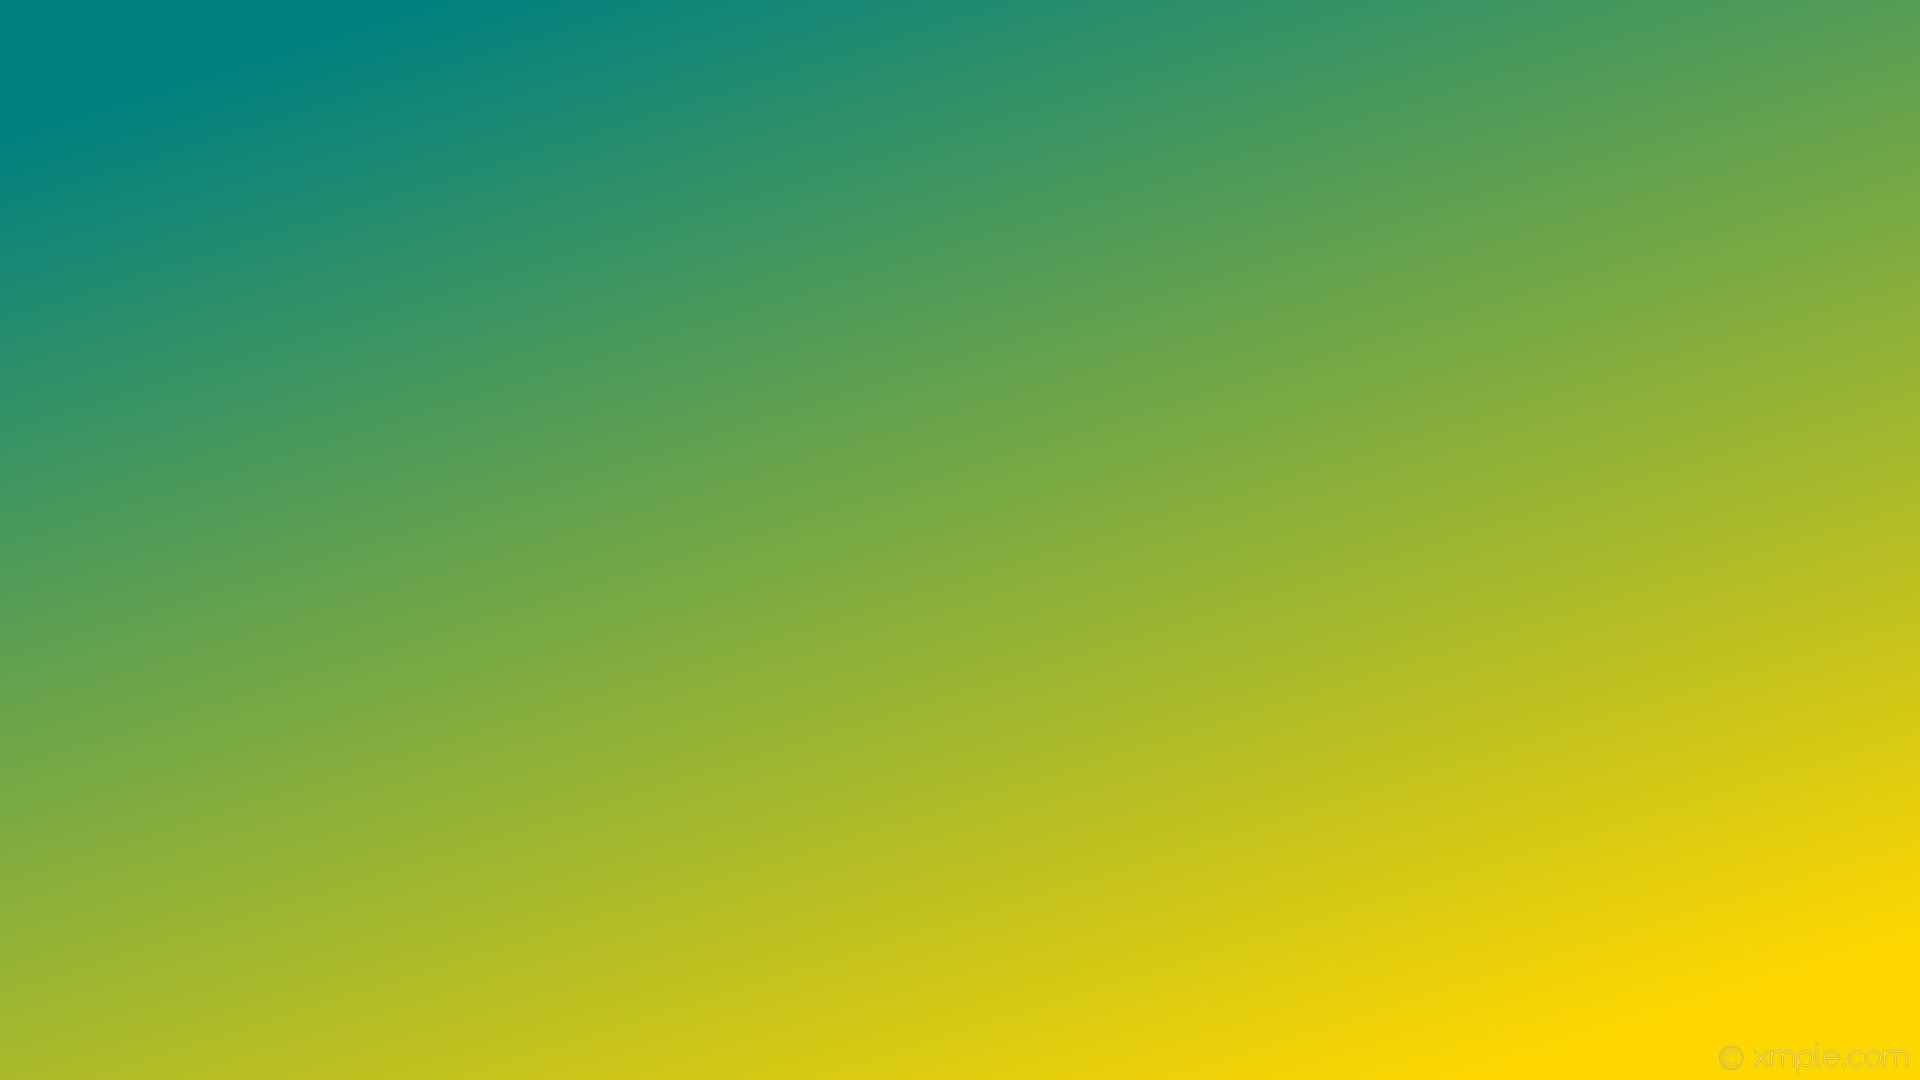 1920x1080 wallpaper yellow gradient linear green gold teal #ffd700 #008080 315Â°